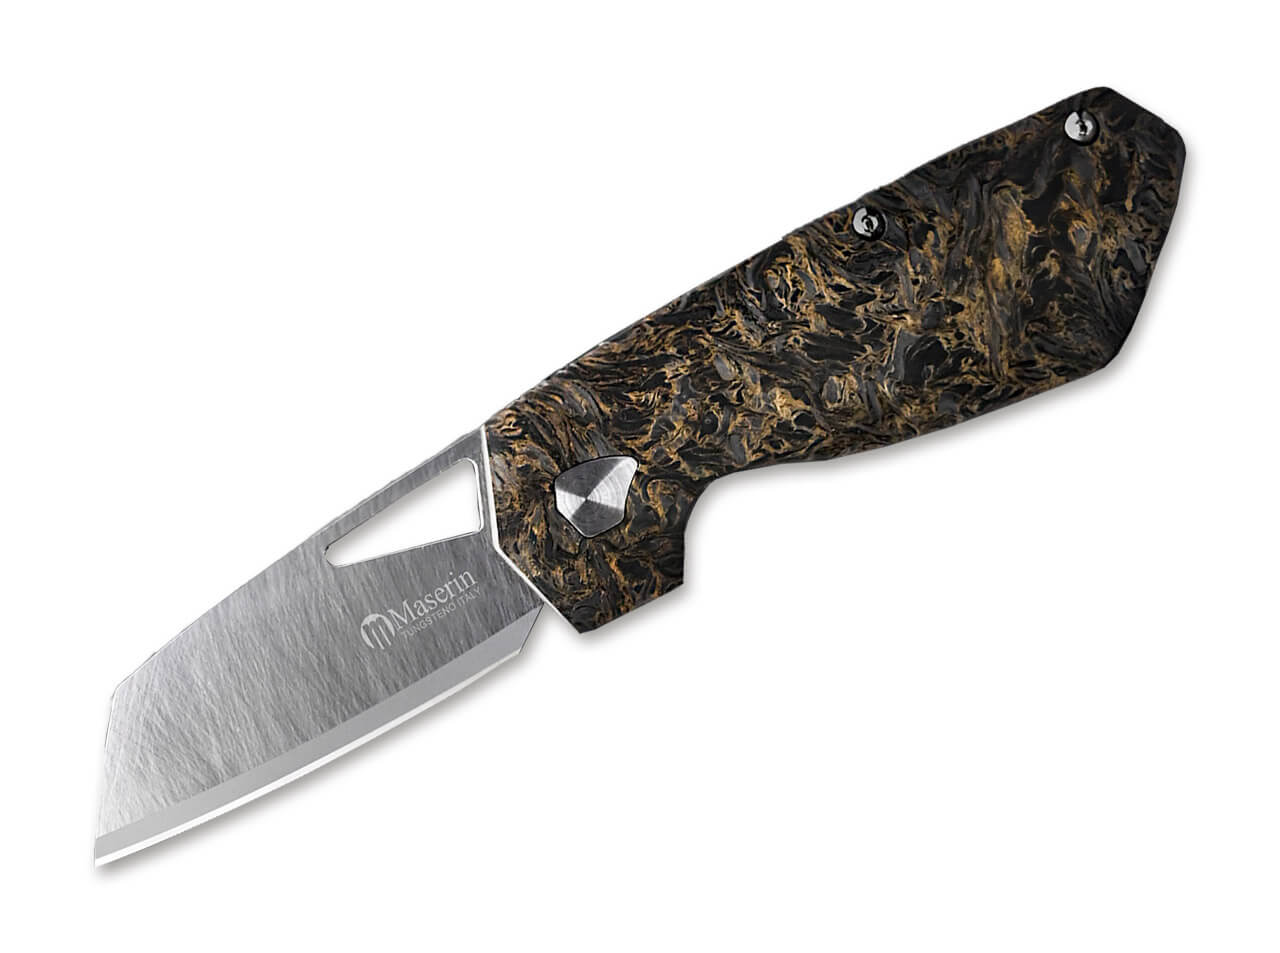 Maserin Carbon Fiber Handle Steak Knives